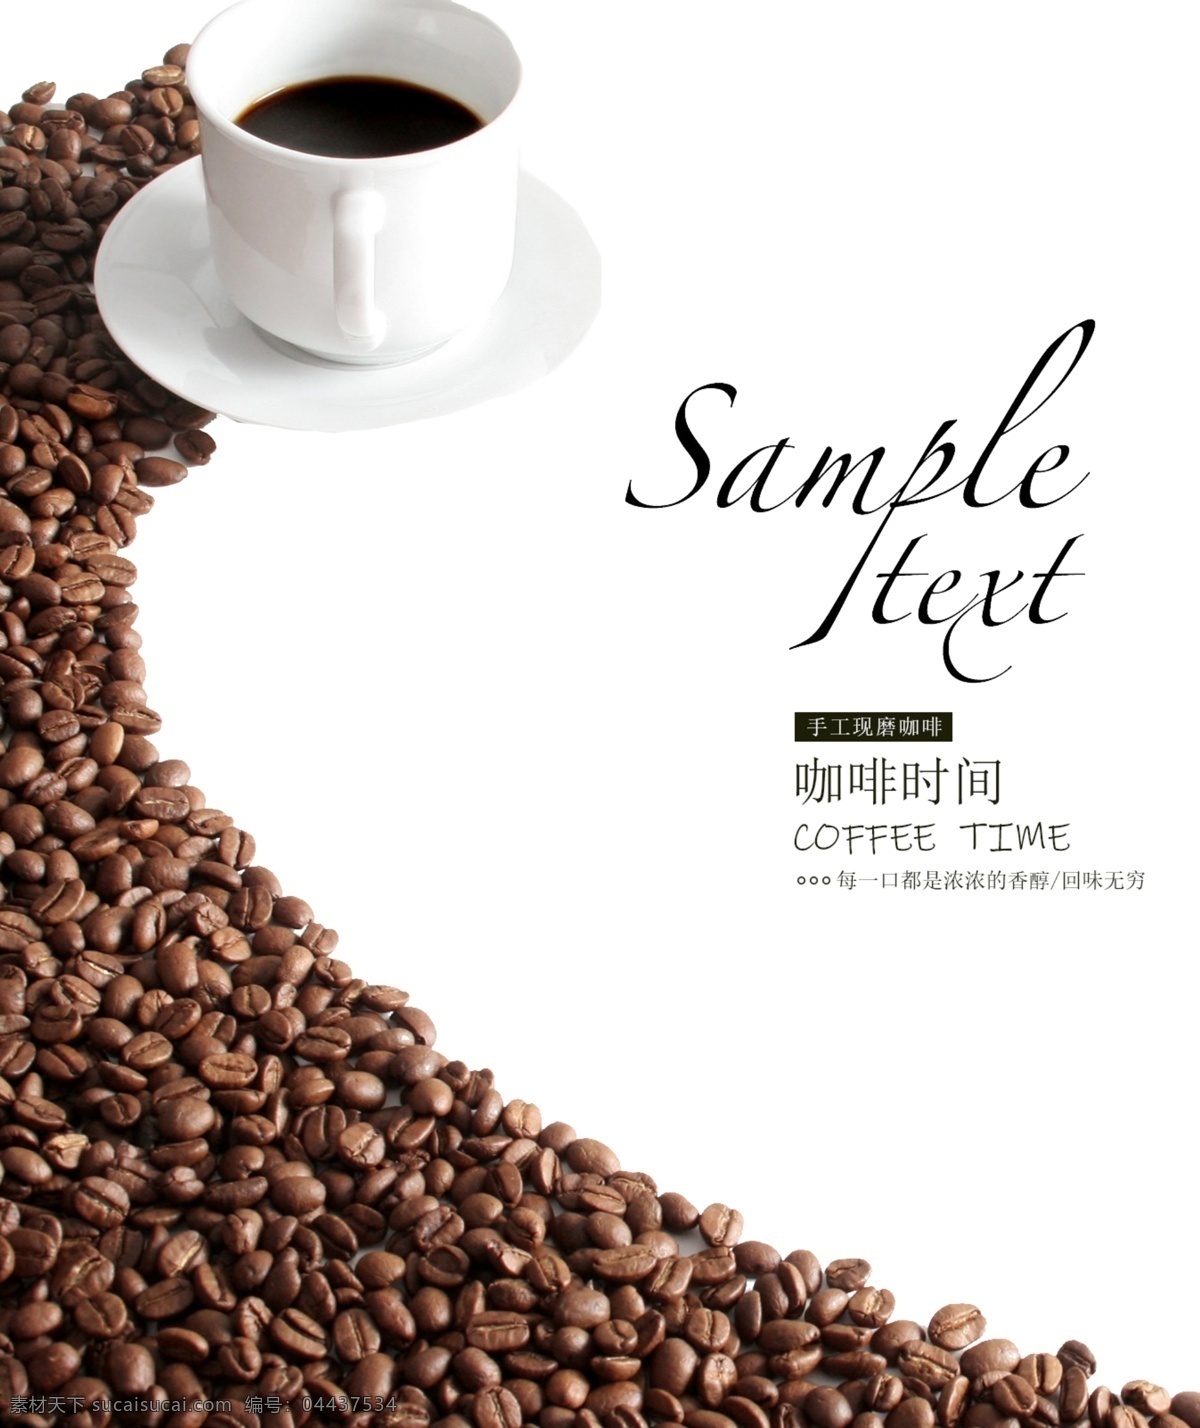 现磨咖啡海报 咖啡装饰画 咖啡画册 西餐海报 咖啡 咖啡素材 咖啡广告 咖啡宣传